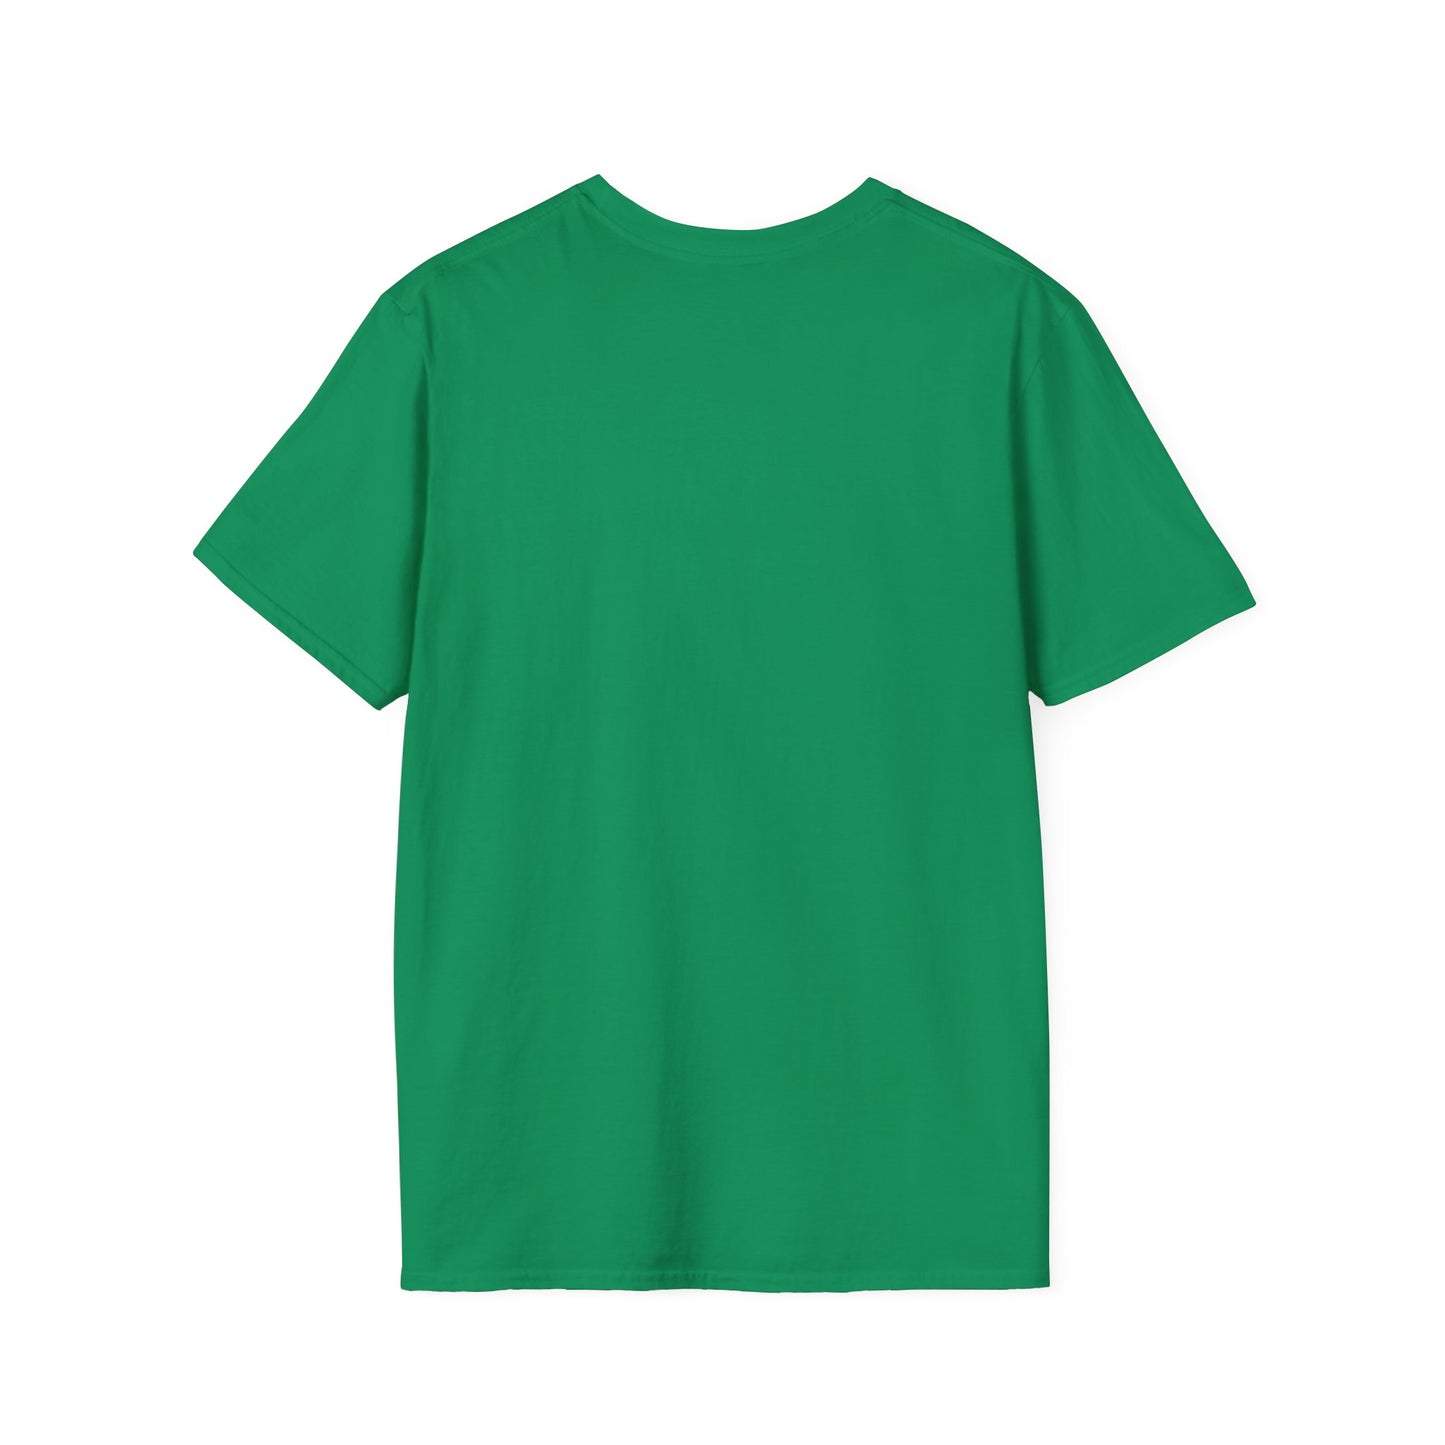 PROPERTY OF Catahoula -  Unisex Softstyle T-Shirt